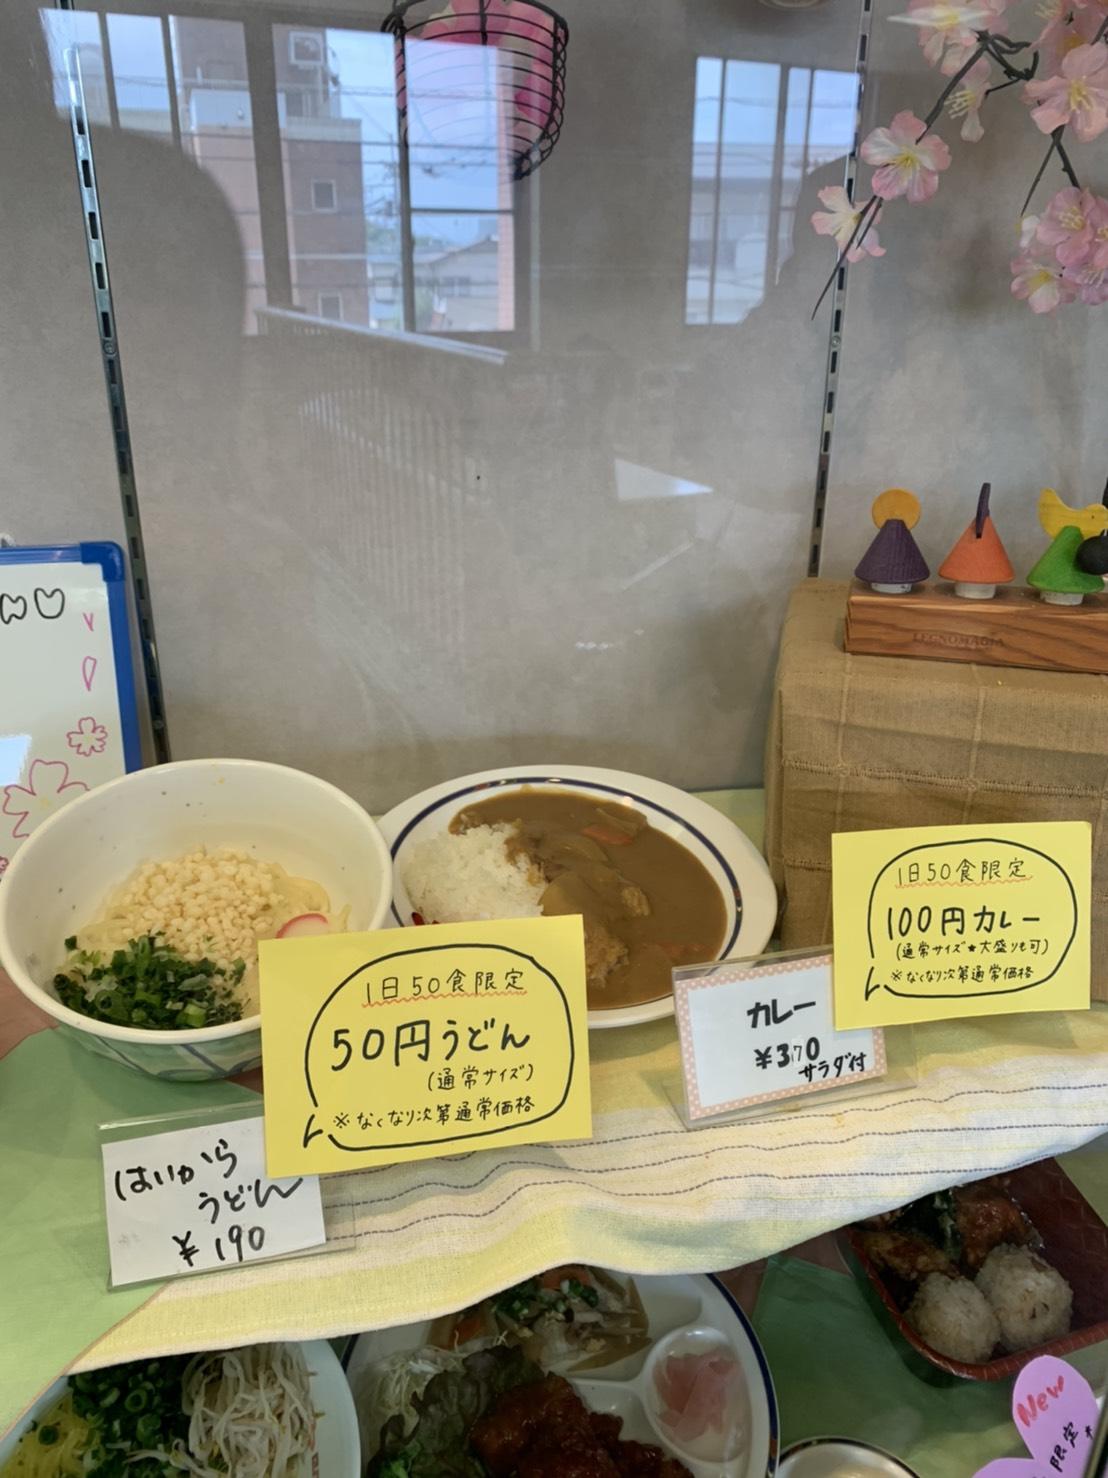 徳島文理大学が学食で100円カレーおよび50円うどんを提供 -- コロナ禍で困窮する学生をサポート